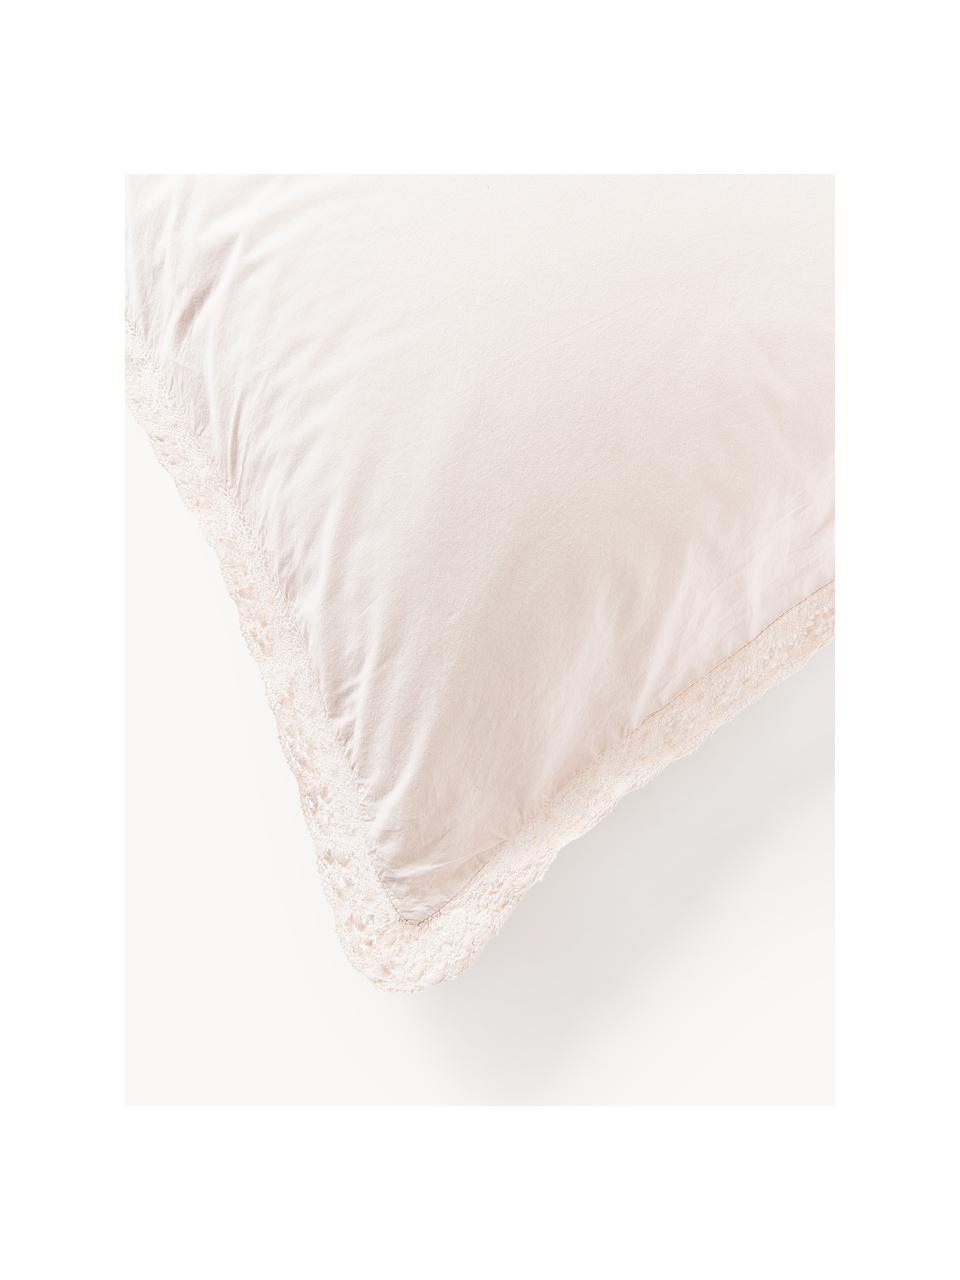 Poszewka na poduszkę z bawełny z falbanką Adoria, Jasny różowy, S 40 x D 80 cm